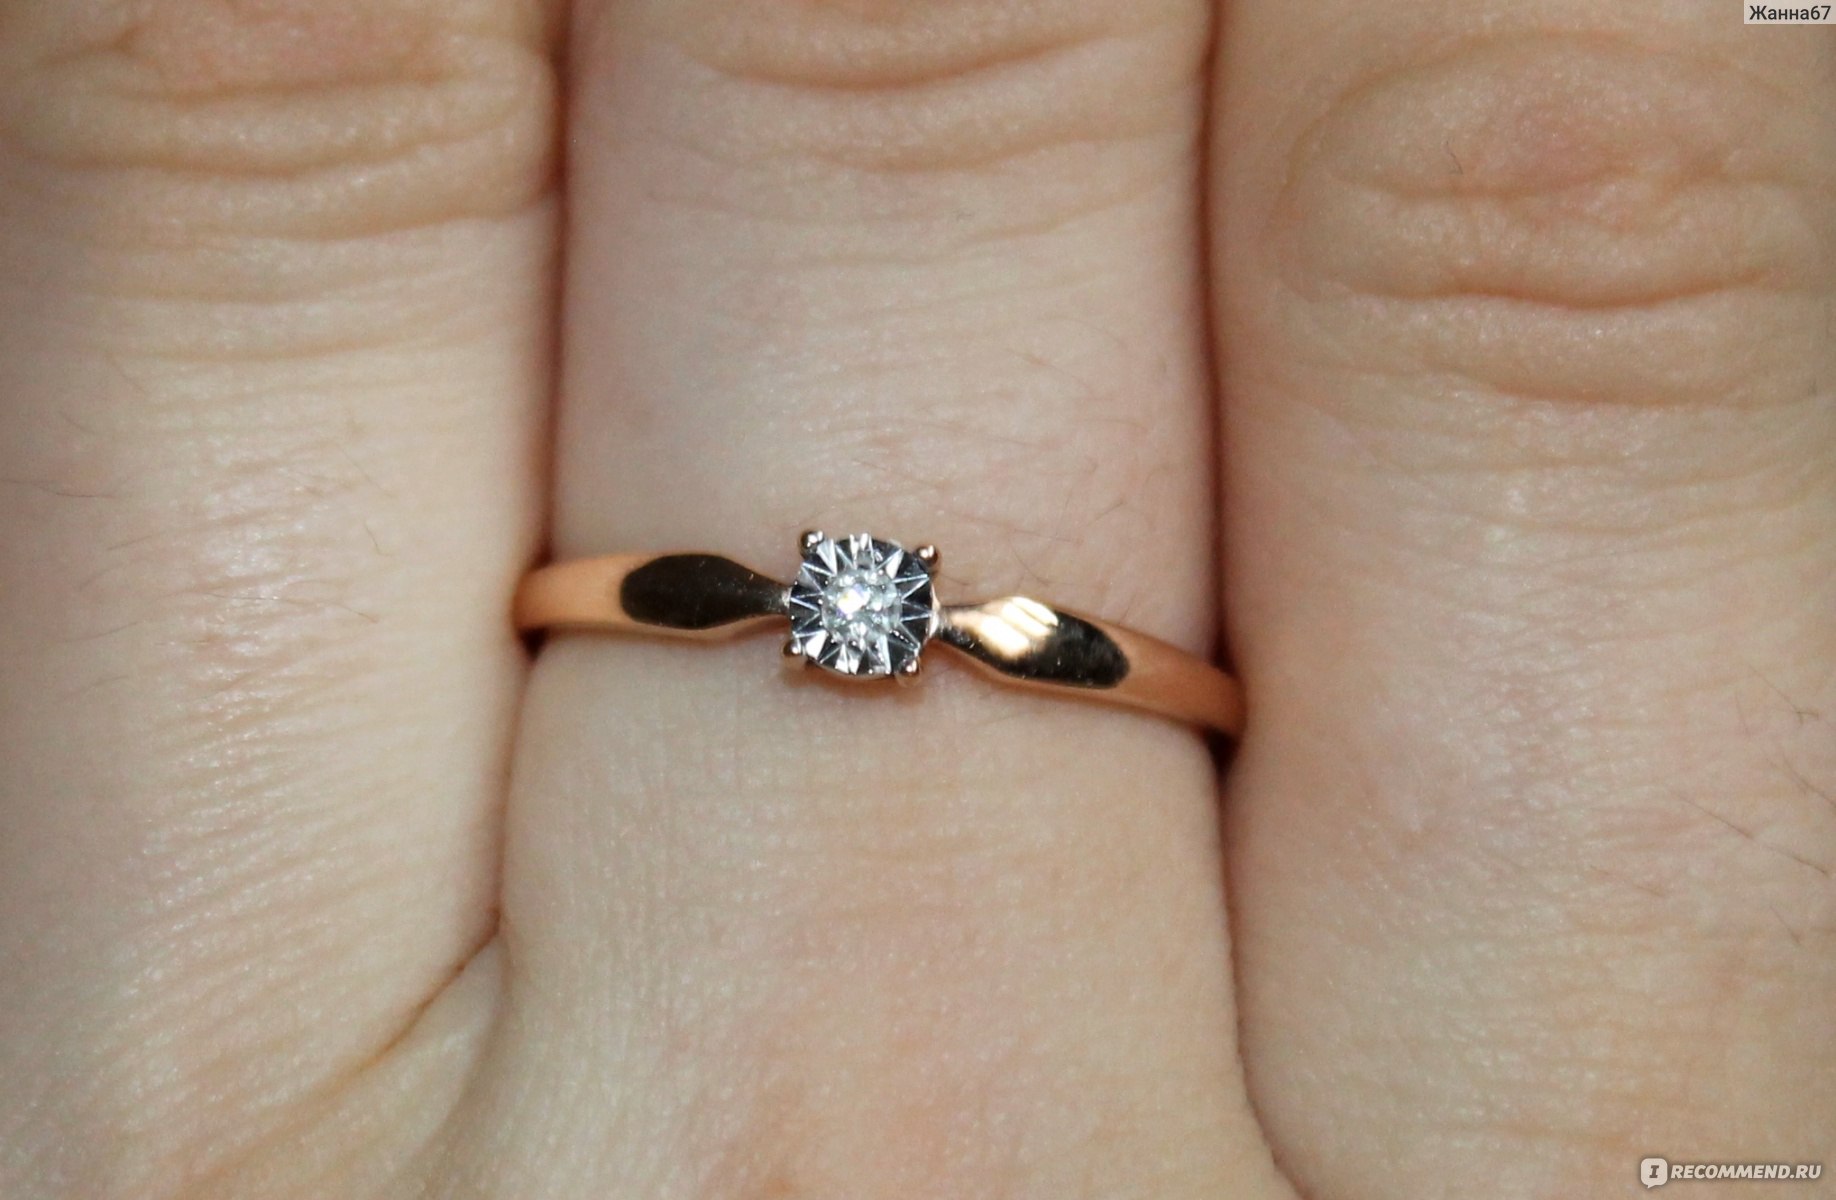 Золотое кольцо SUNLIGHT BRILLIANT с бриллиантами артикул 51534 - «Прелестное колечко, неплохо смотрится на руке и ничего лишнего»